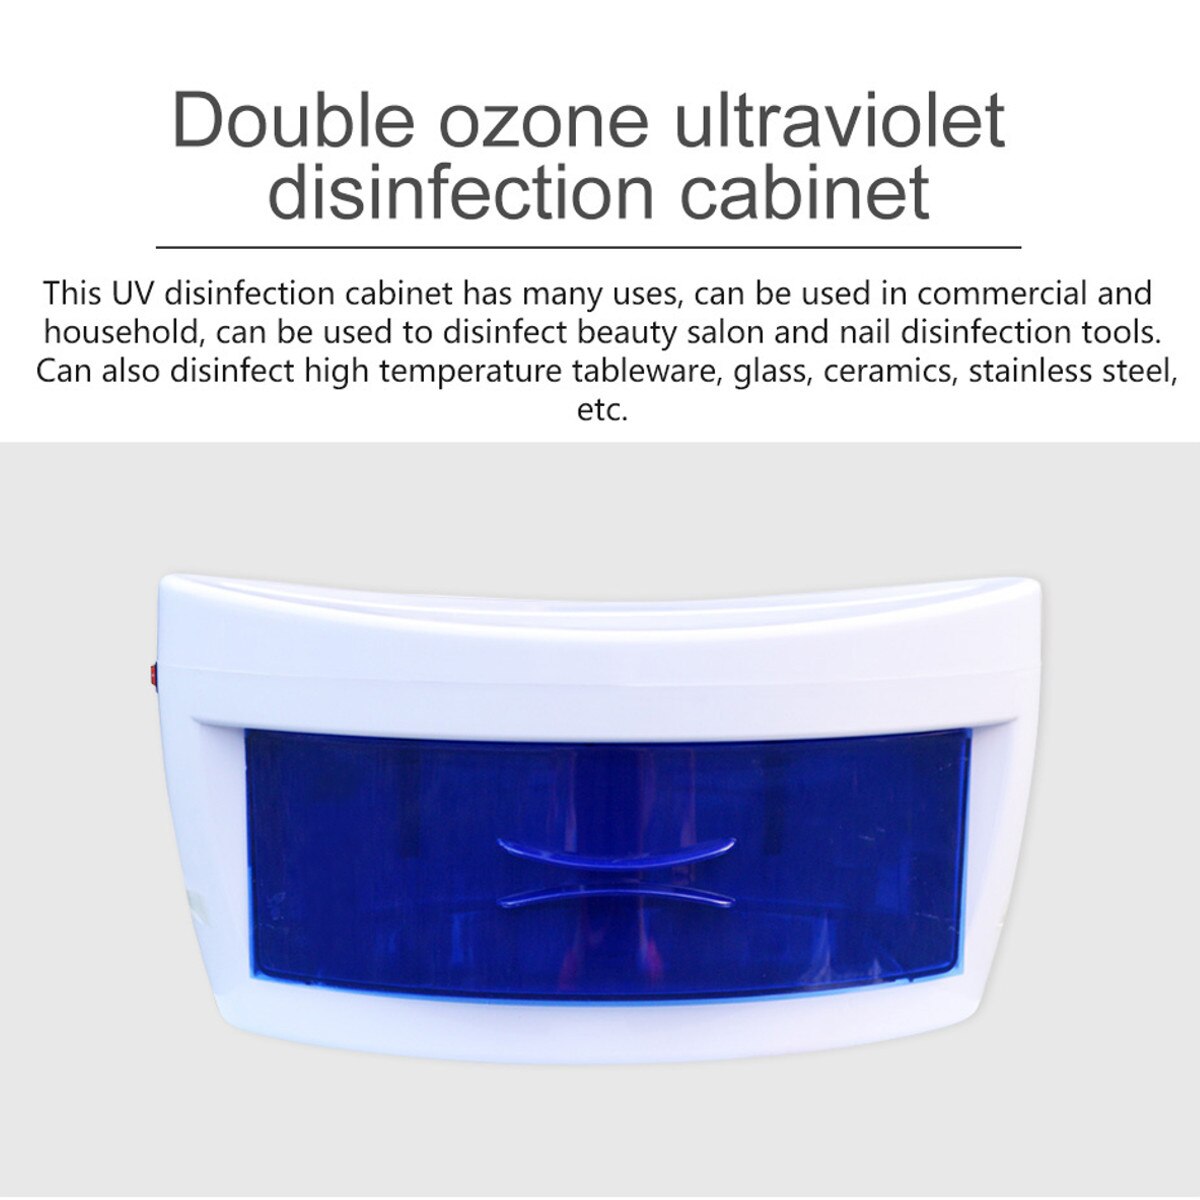 10l specialsterilisator ultraviolet ozonhåndklædeskab uv rengøring til tøj hjemme salon hotel sterilisator maskine 220-240